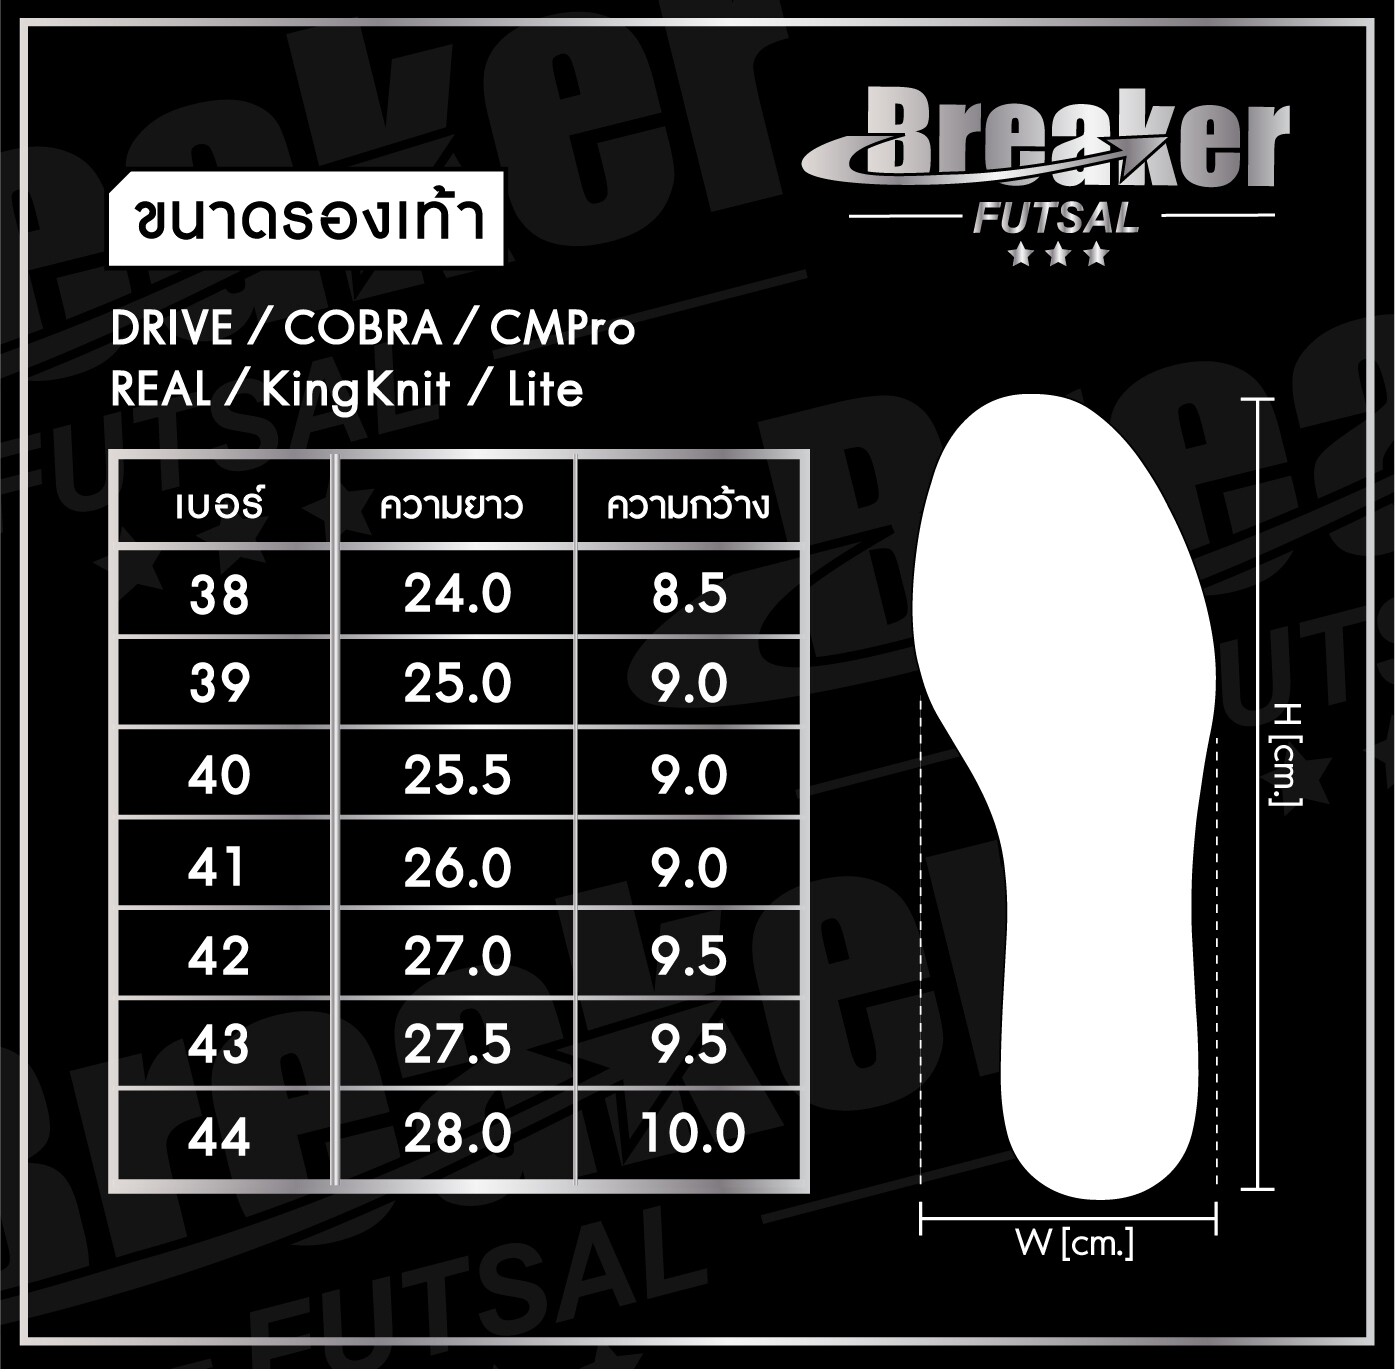 มุมมองเพิ่มเติมเกี่ยวกับ รองเท้าฟุตซอล Breaker รหัส BK1110